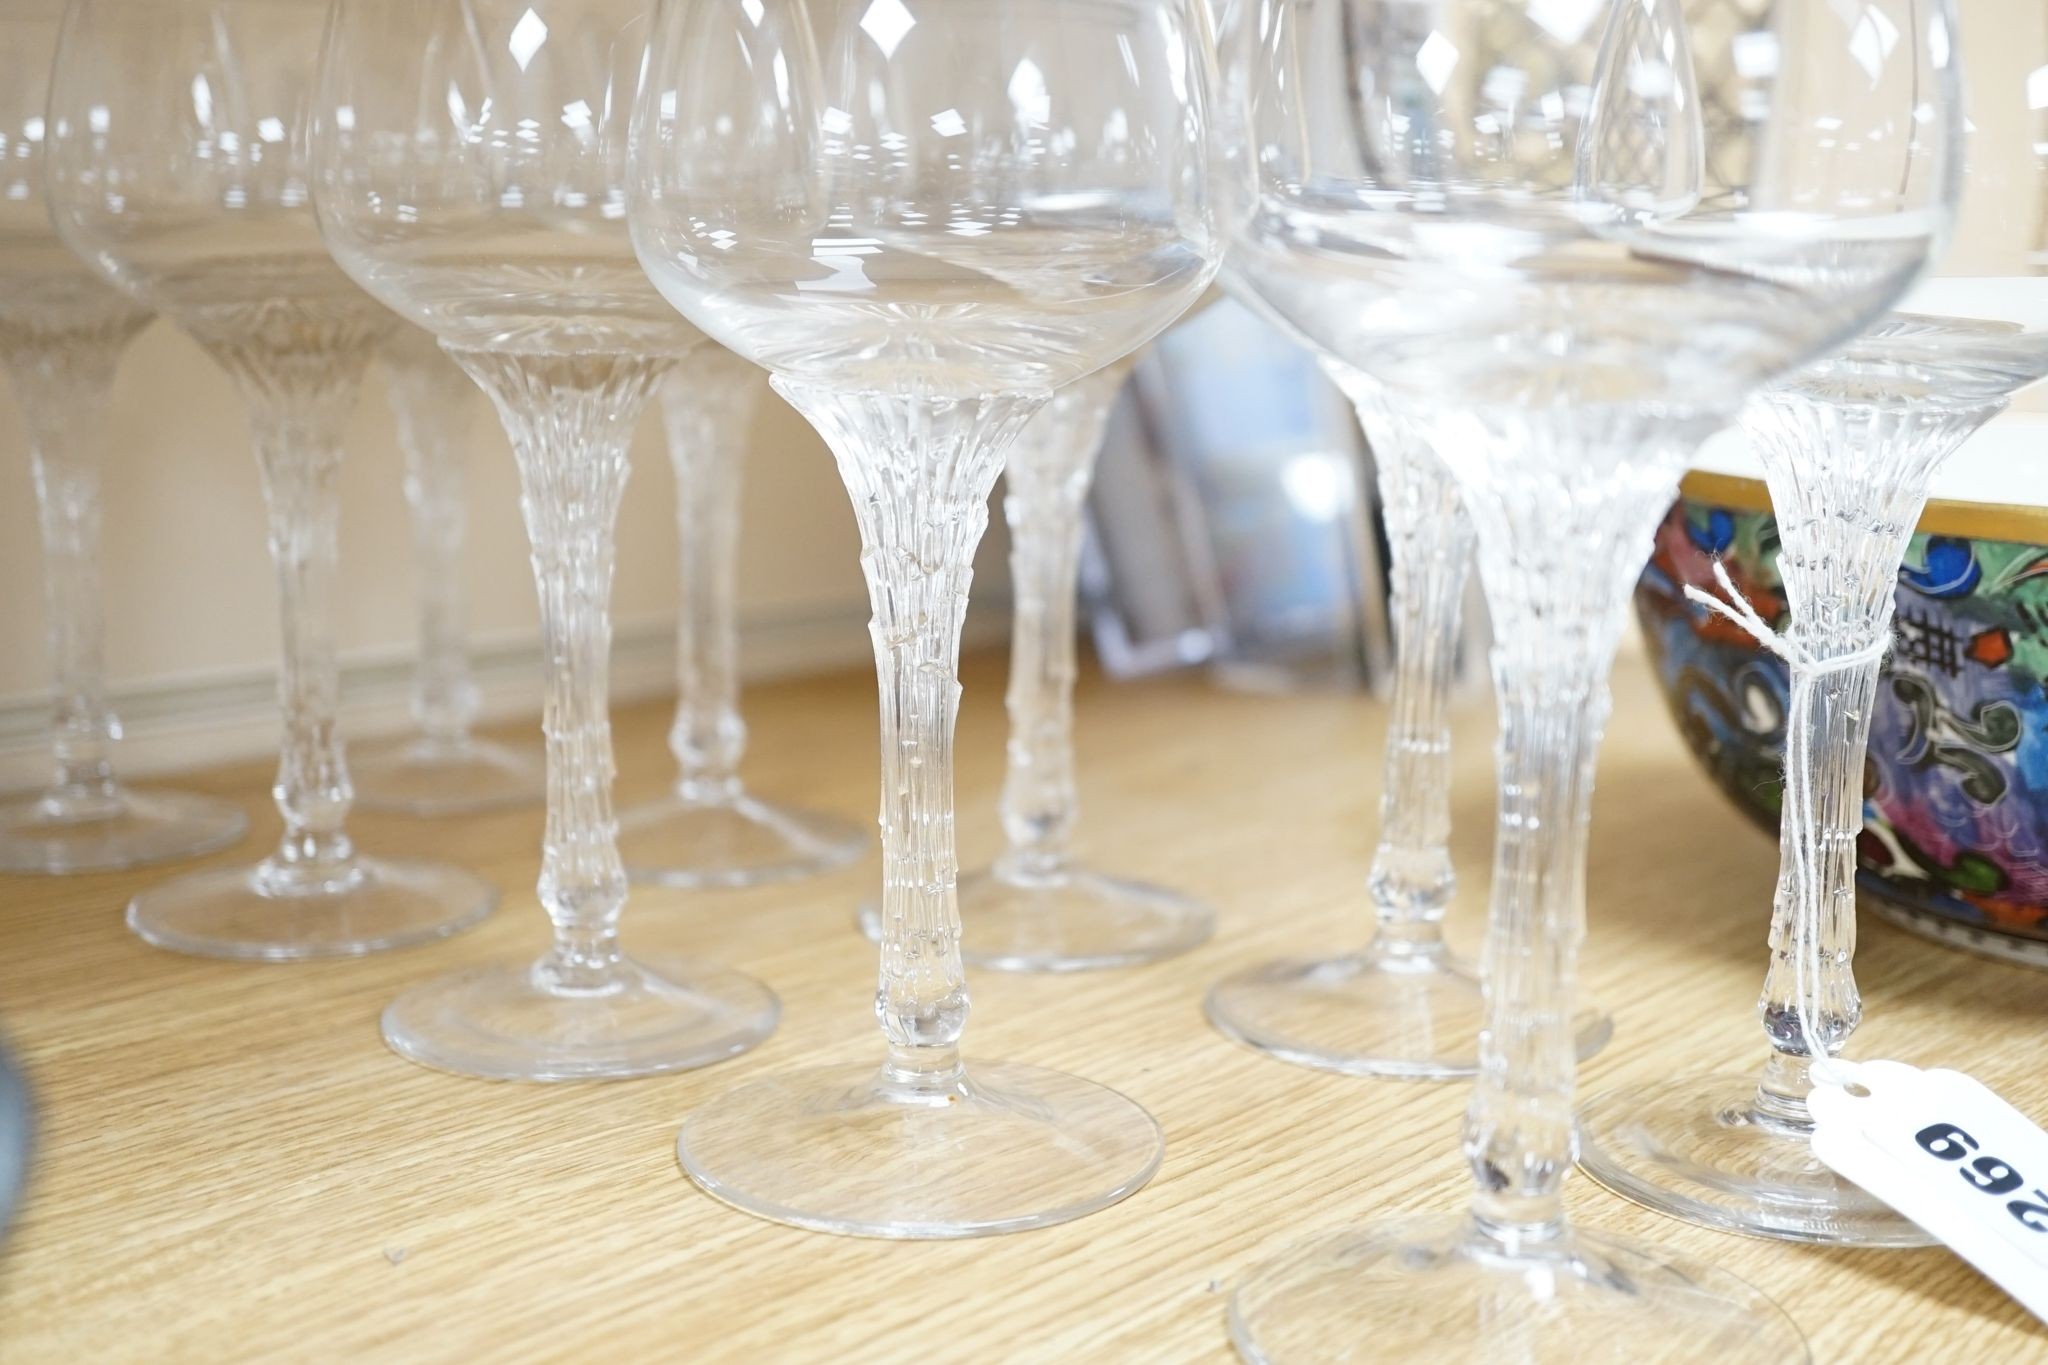 Ten Rosenthal Studio-Line split pattern wine glasses, 17.5 cms high.